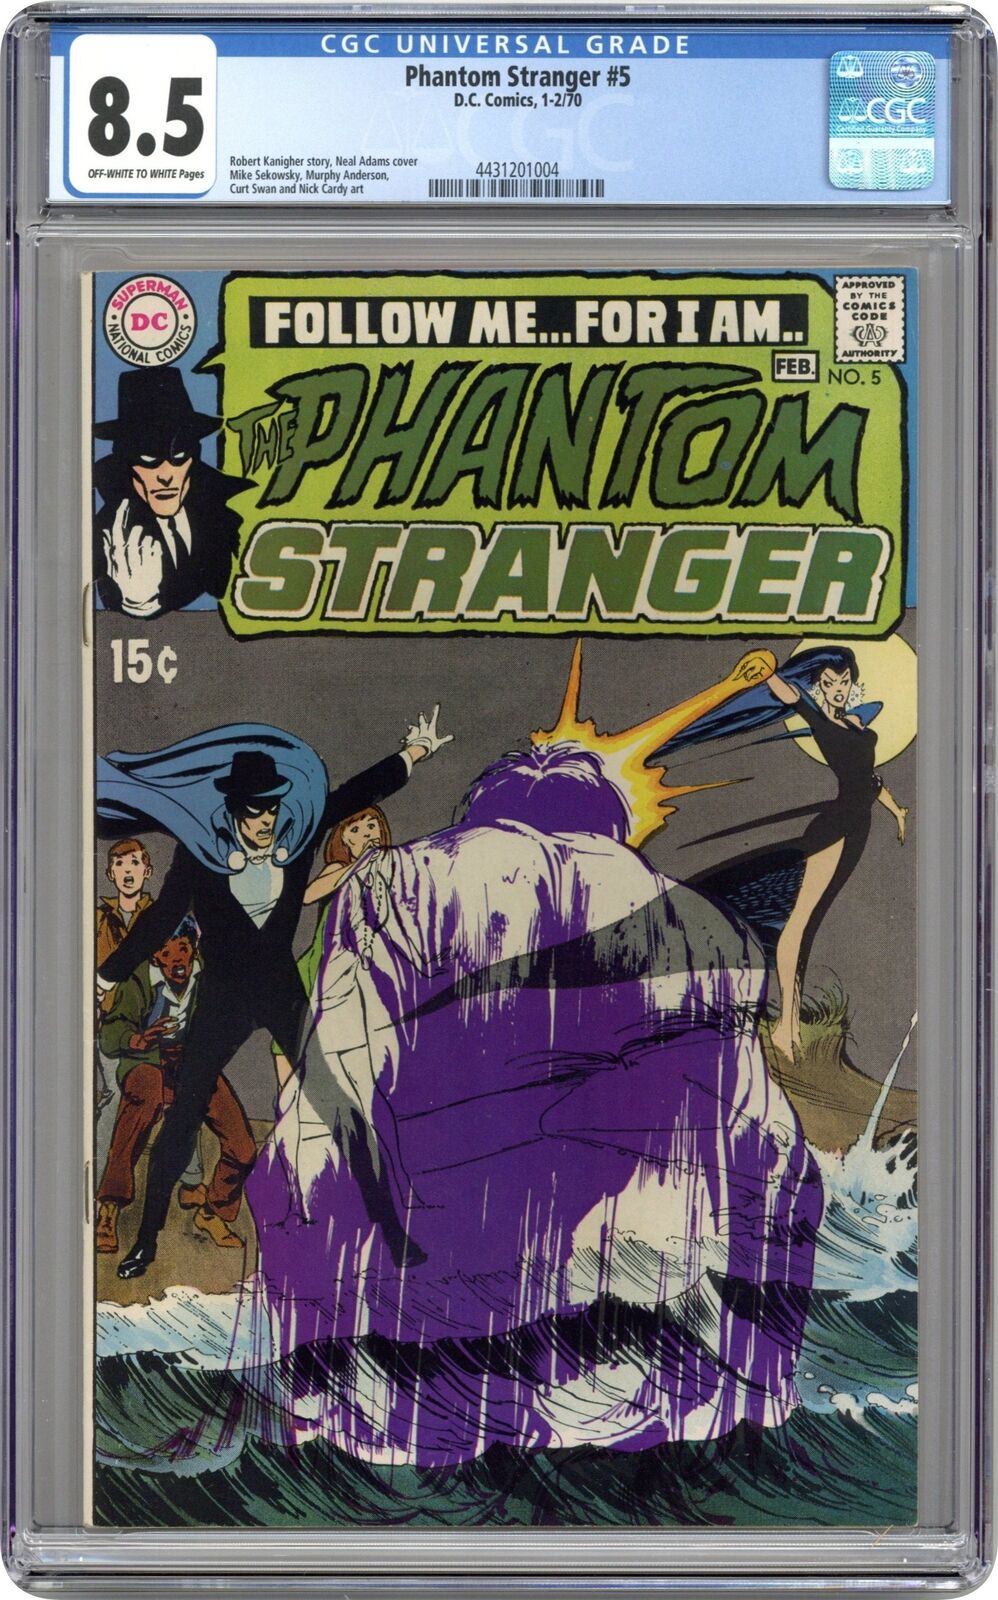 Phantom Stranger #5 CGC 8.5 1970 4431201004